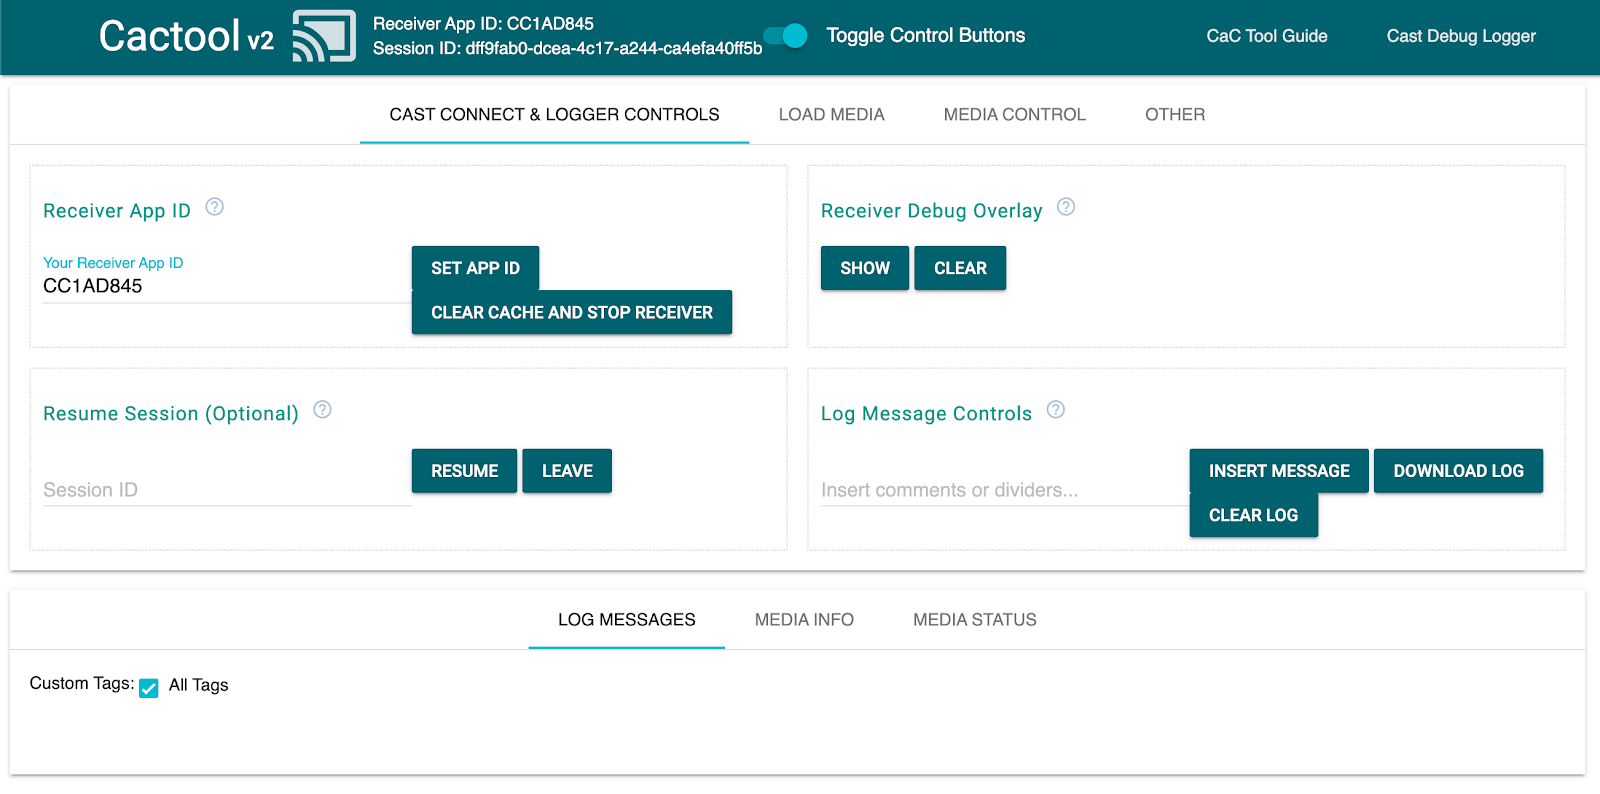 「指令與控制」(CaC) 工具的「Cast Connect & Logger Controls」分頁圖片，顯示已連線至接收端應用程式